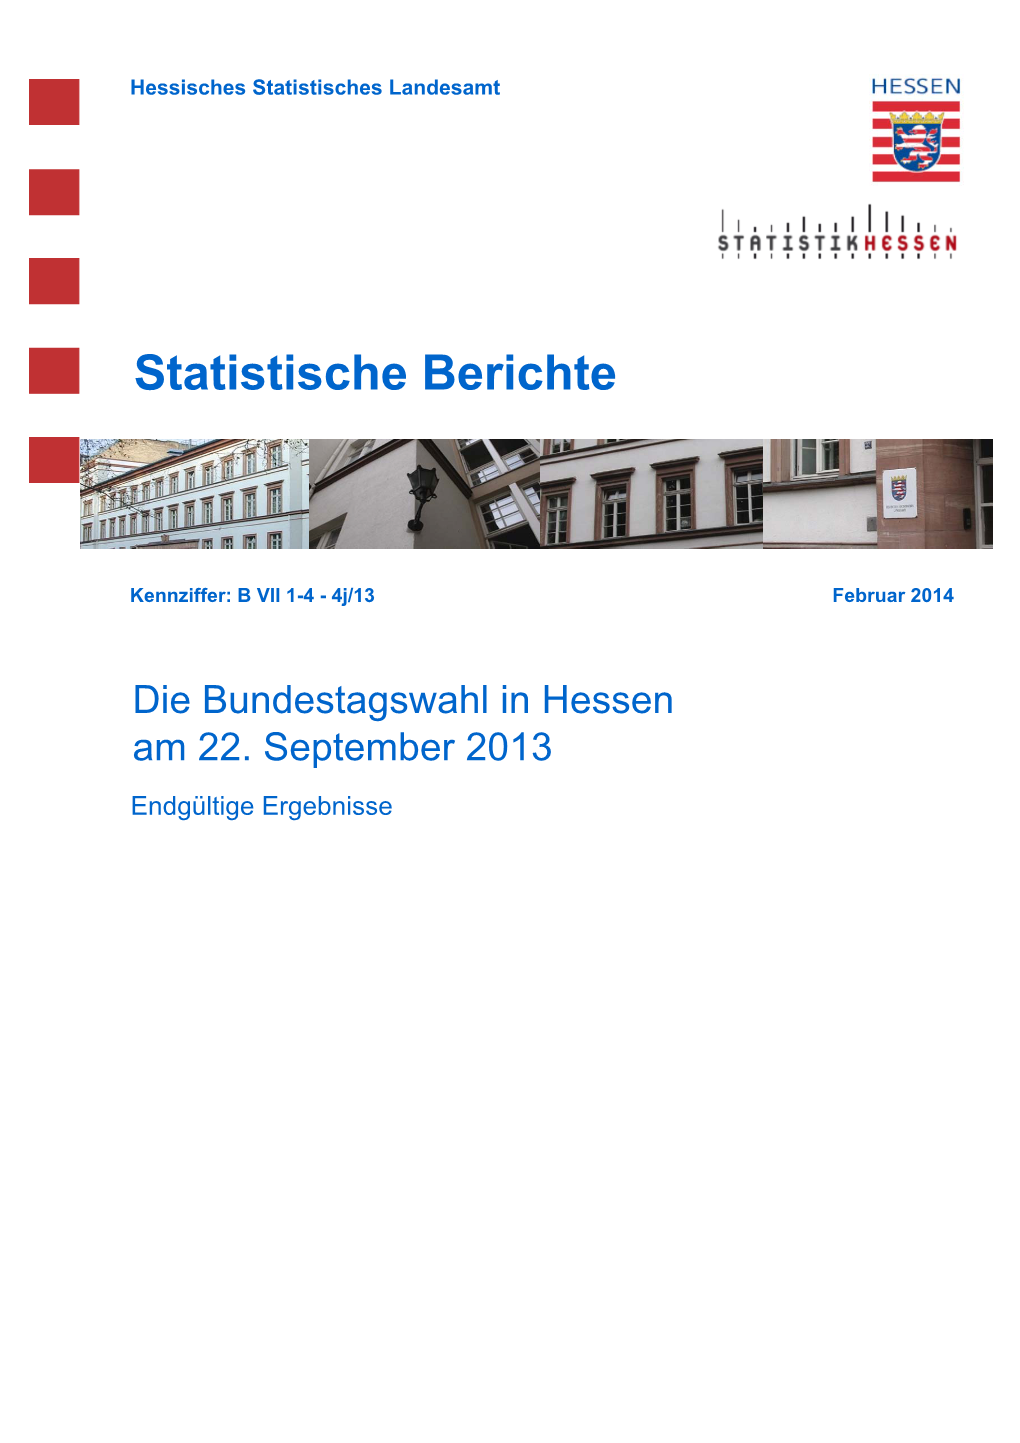 Die Bundestagswahl in Hessen Am 22. September 2013 Endgültige Ergebnisse Hessisches Statistisches Landesamt, Wiesbaden